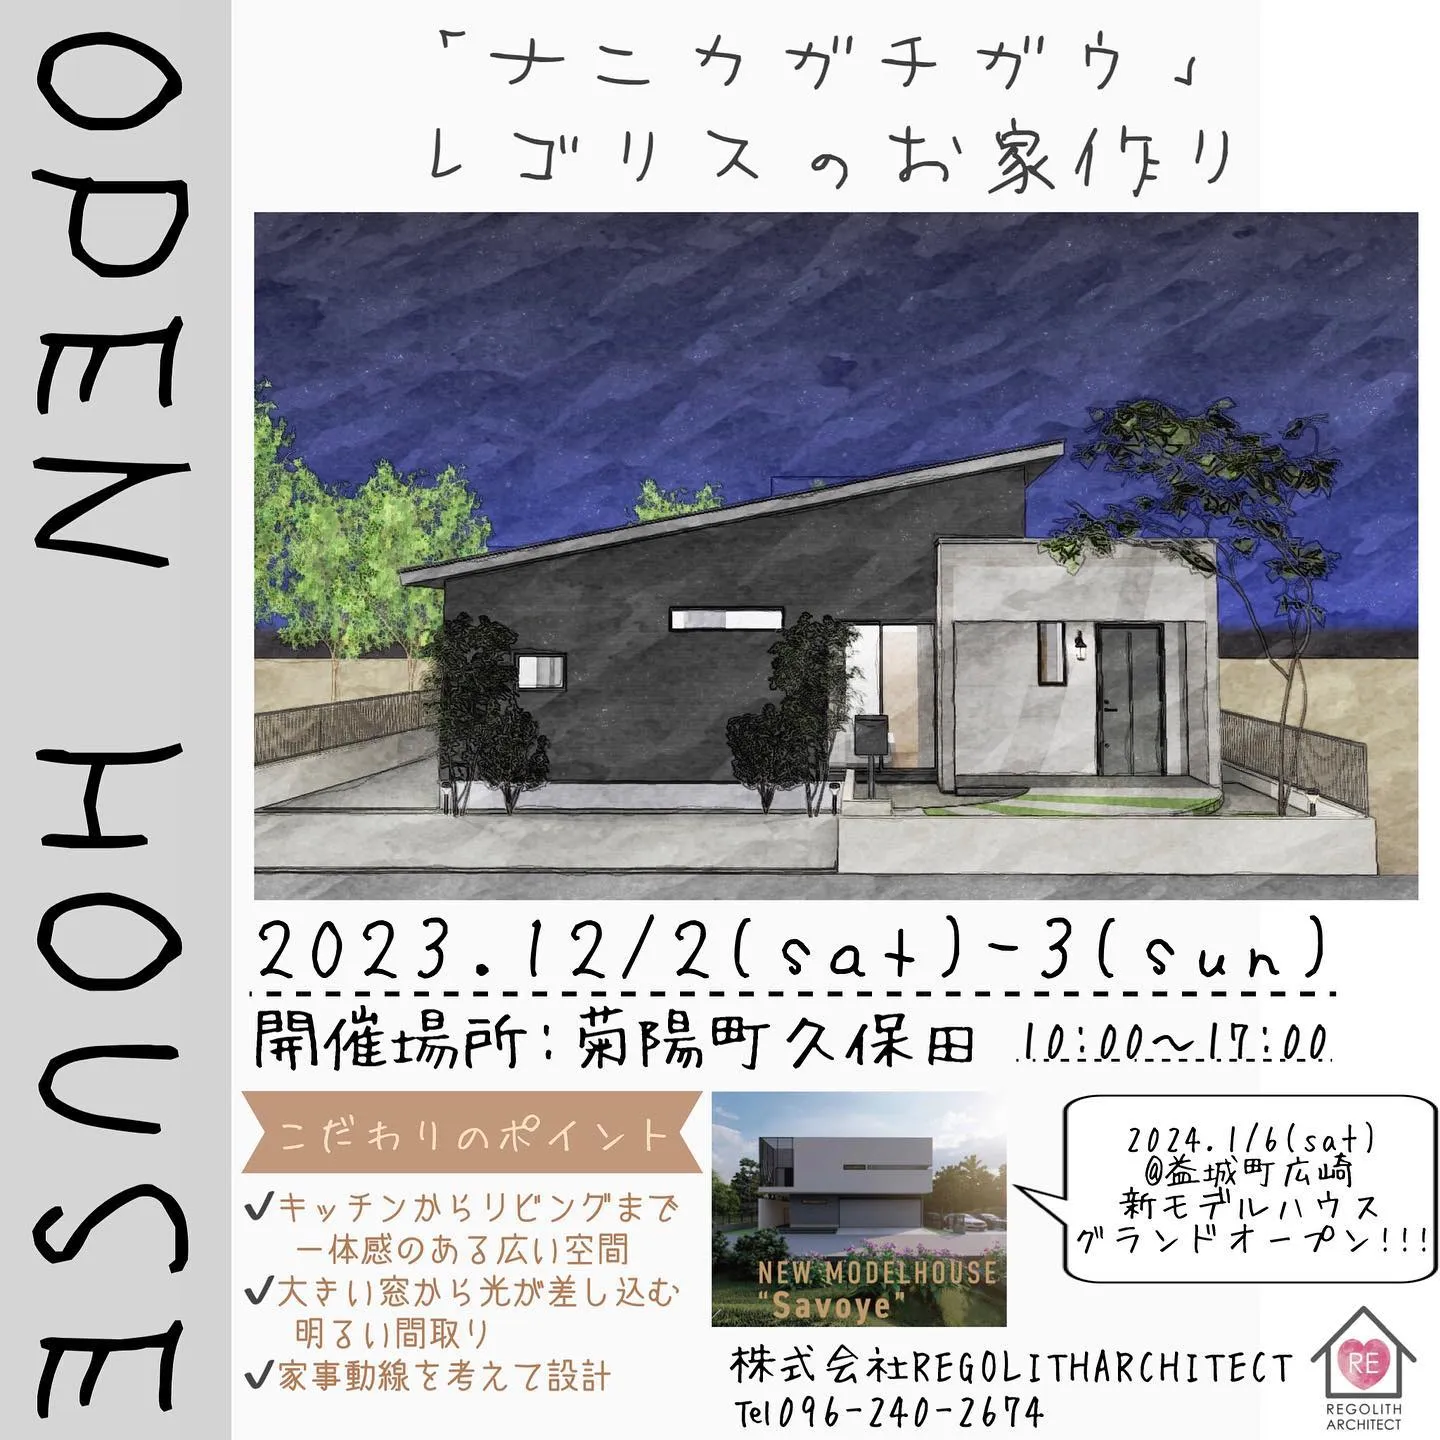 【OPEN HOUSE開催のお知らせ】